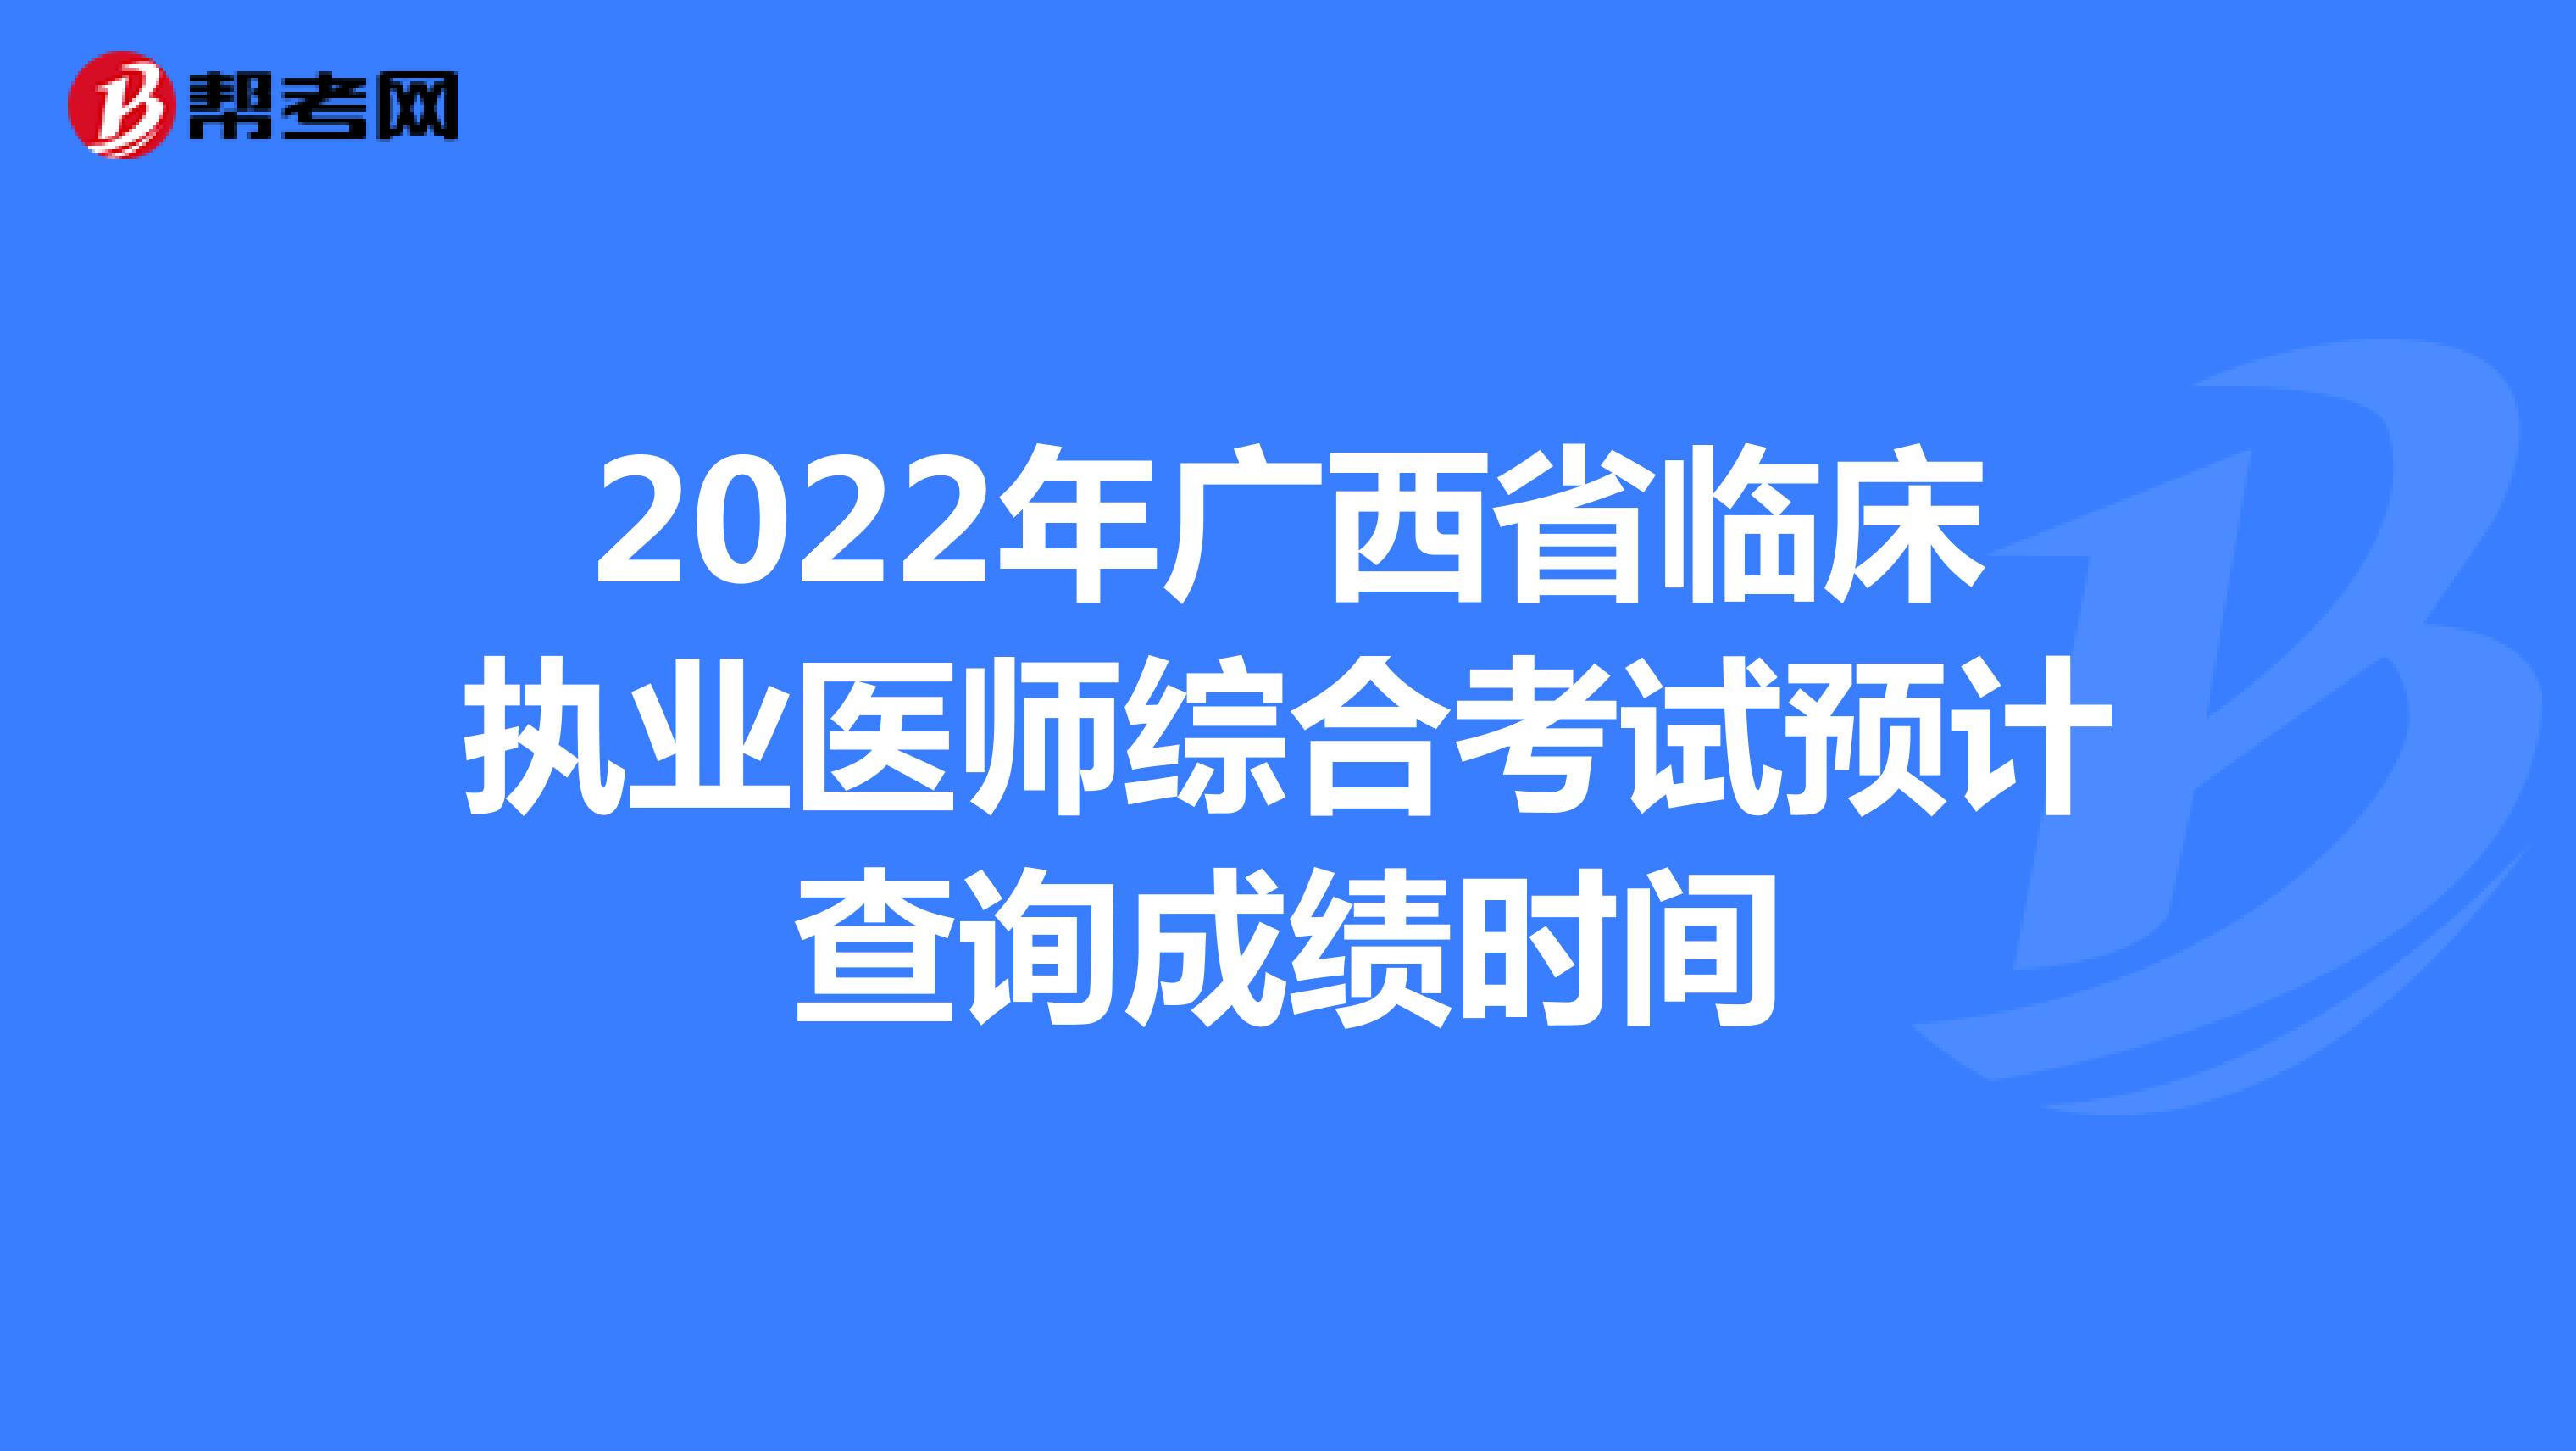 2022年广西省临床执业医师综合考试预计查询成绩时间